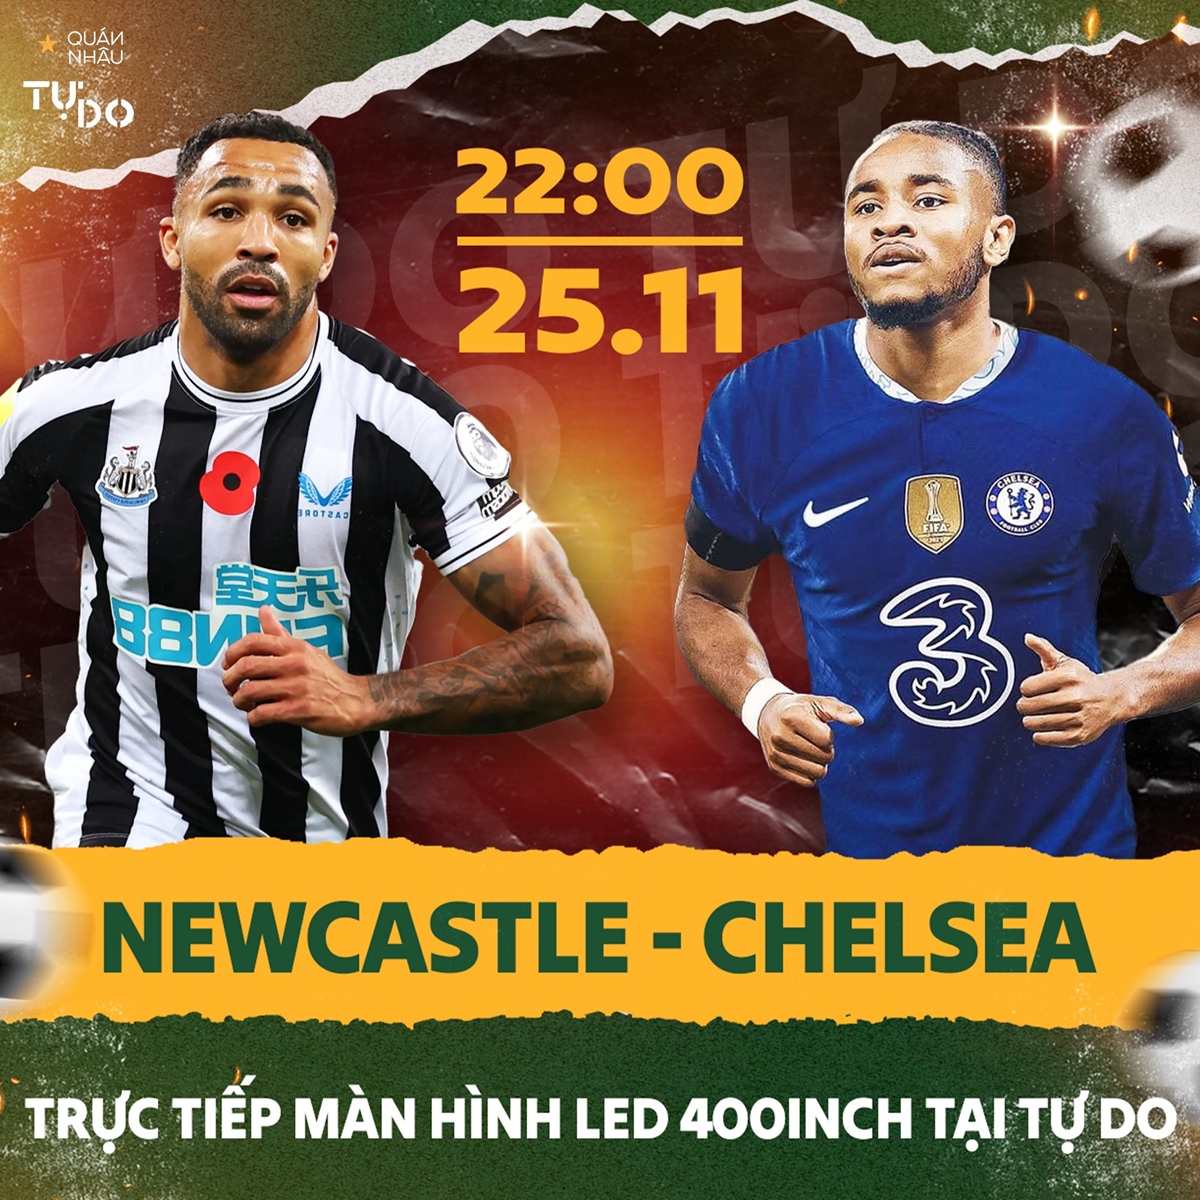 Newcastle và Chelsea sẽ gặp nhau lúc 10h tối ngày 25/11 